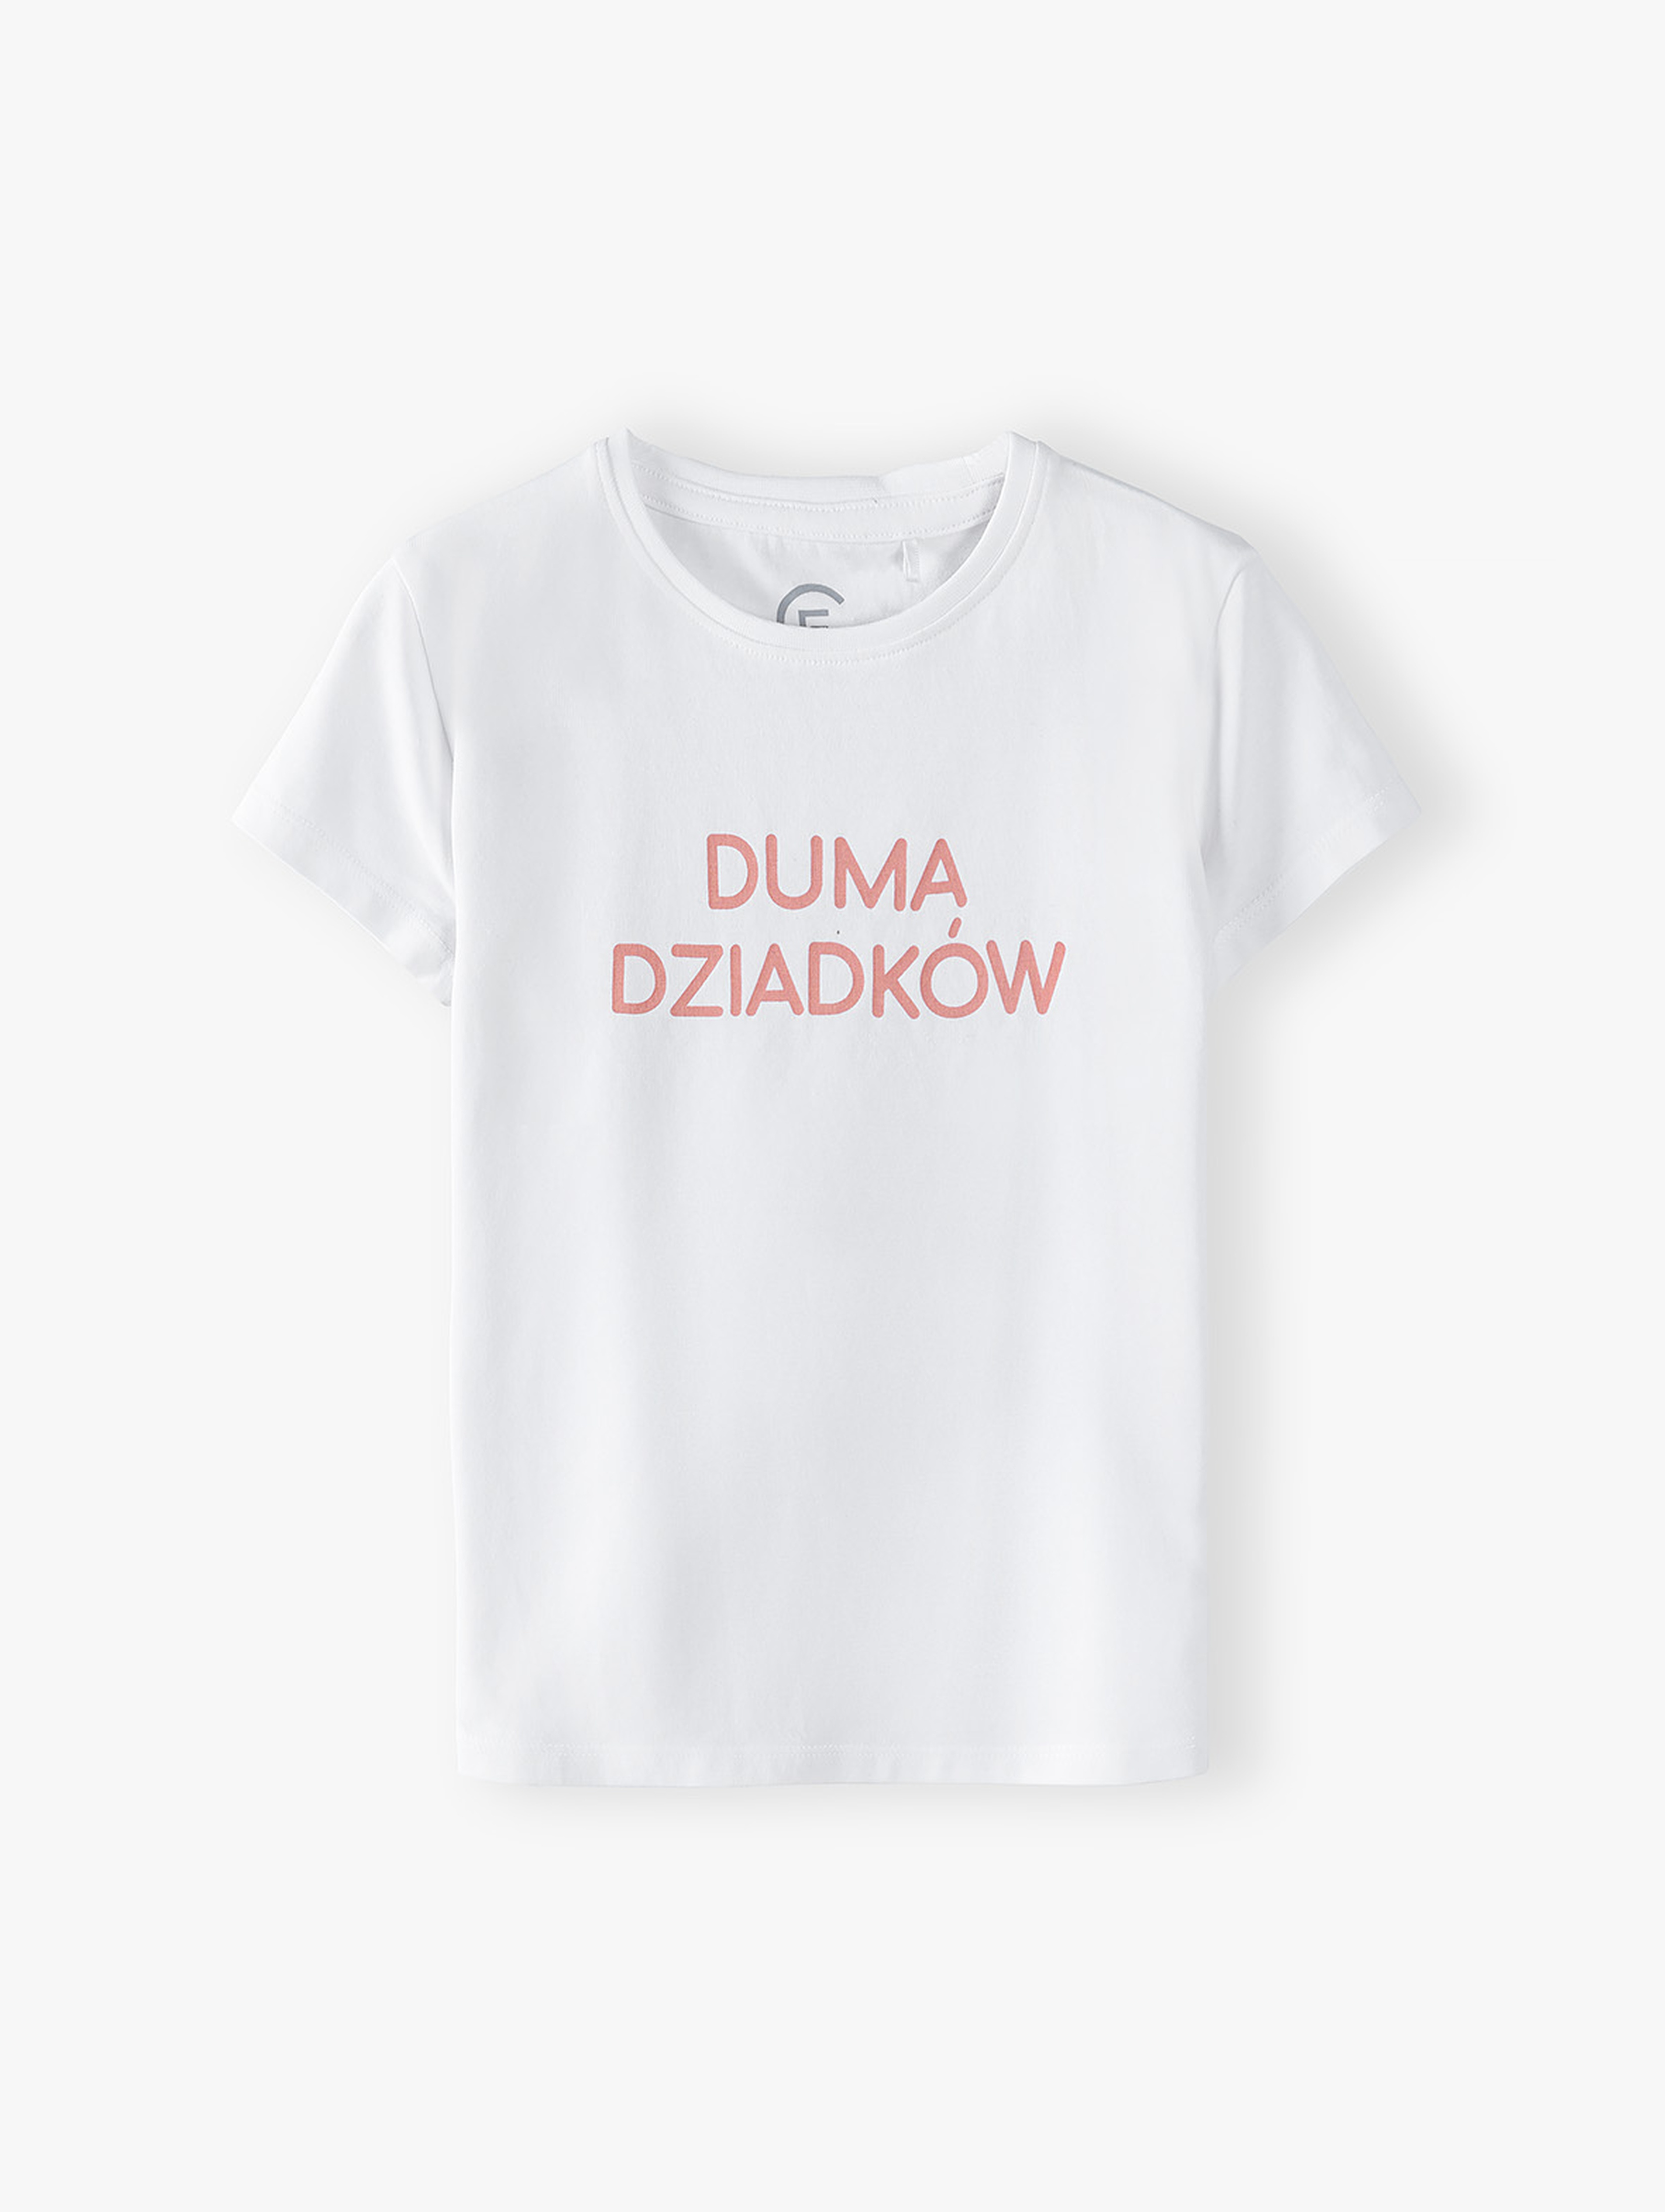 Biały t-shirt dziewczęcy z napisem - Duma dziadków